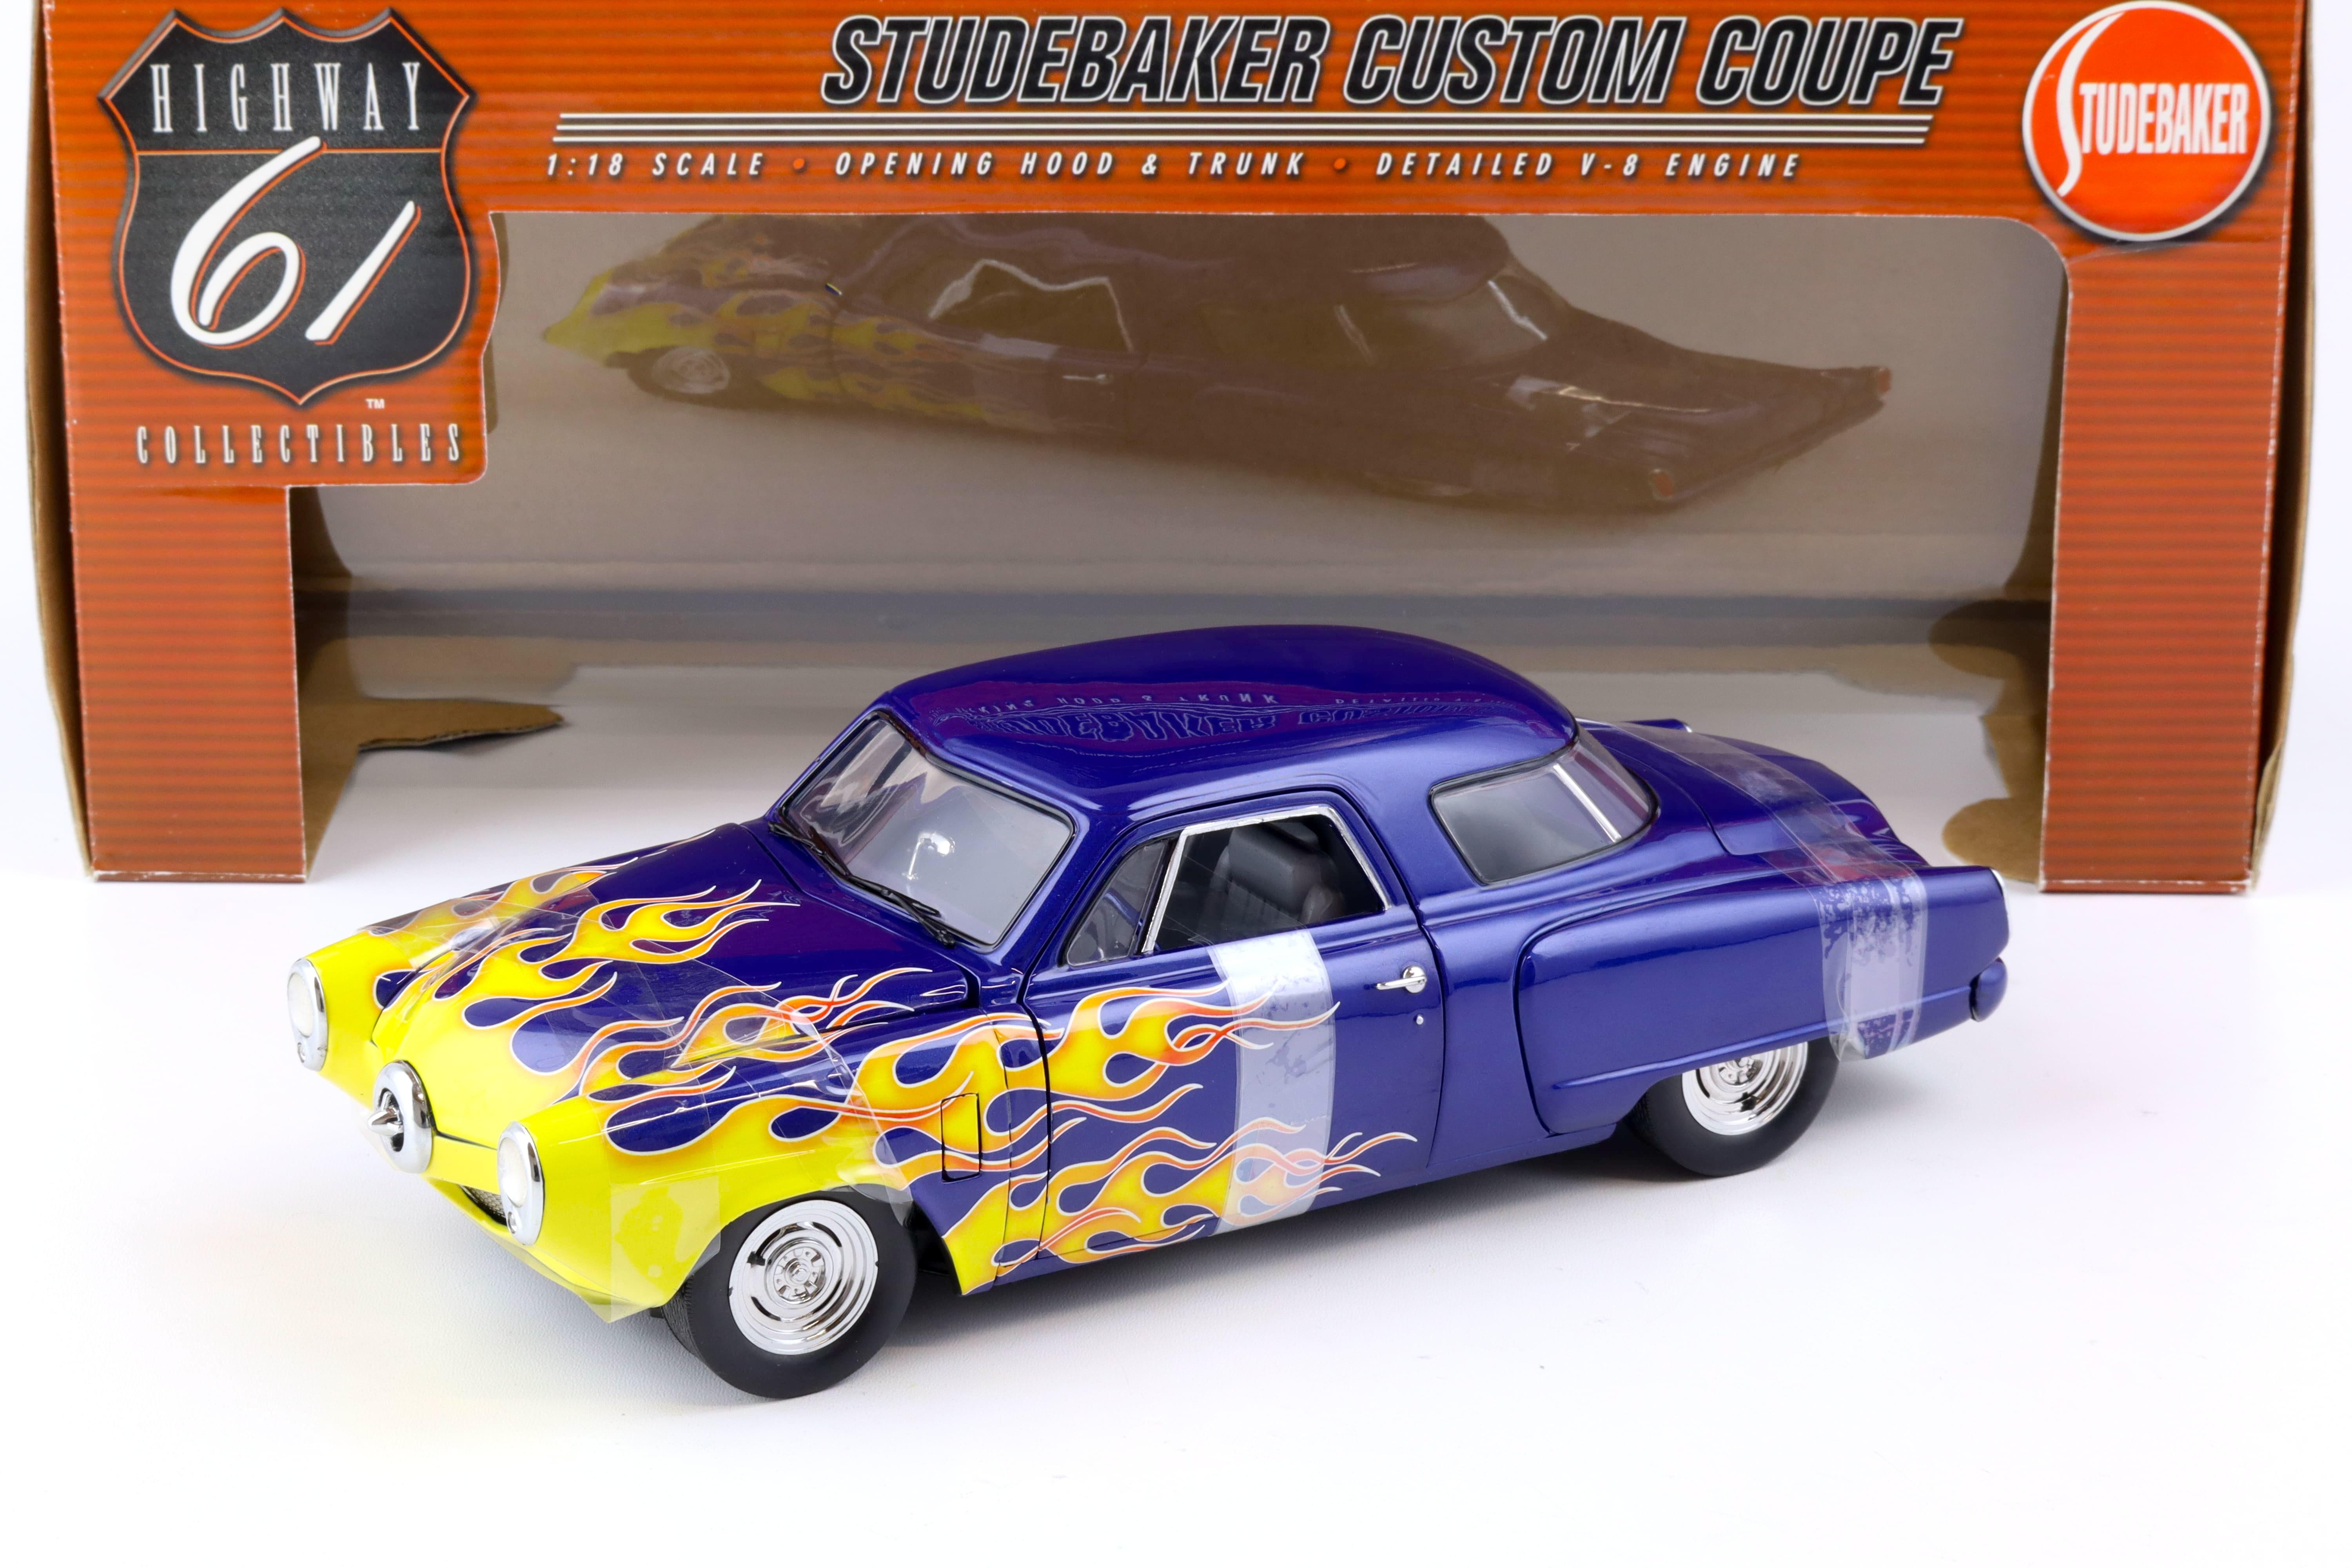 1:18 Highway61 Studebaker Custom Coupe blue metallic with yellow flames 50125